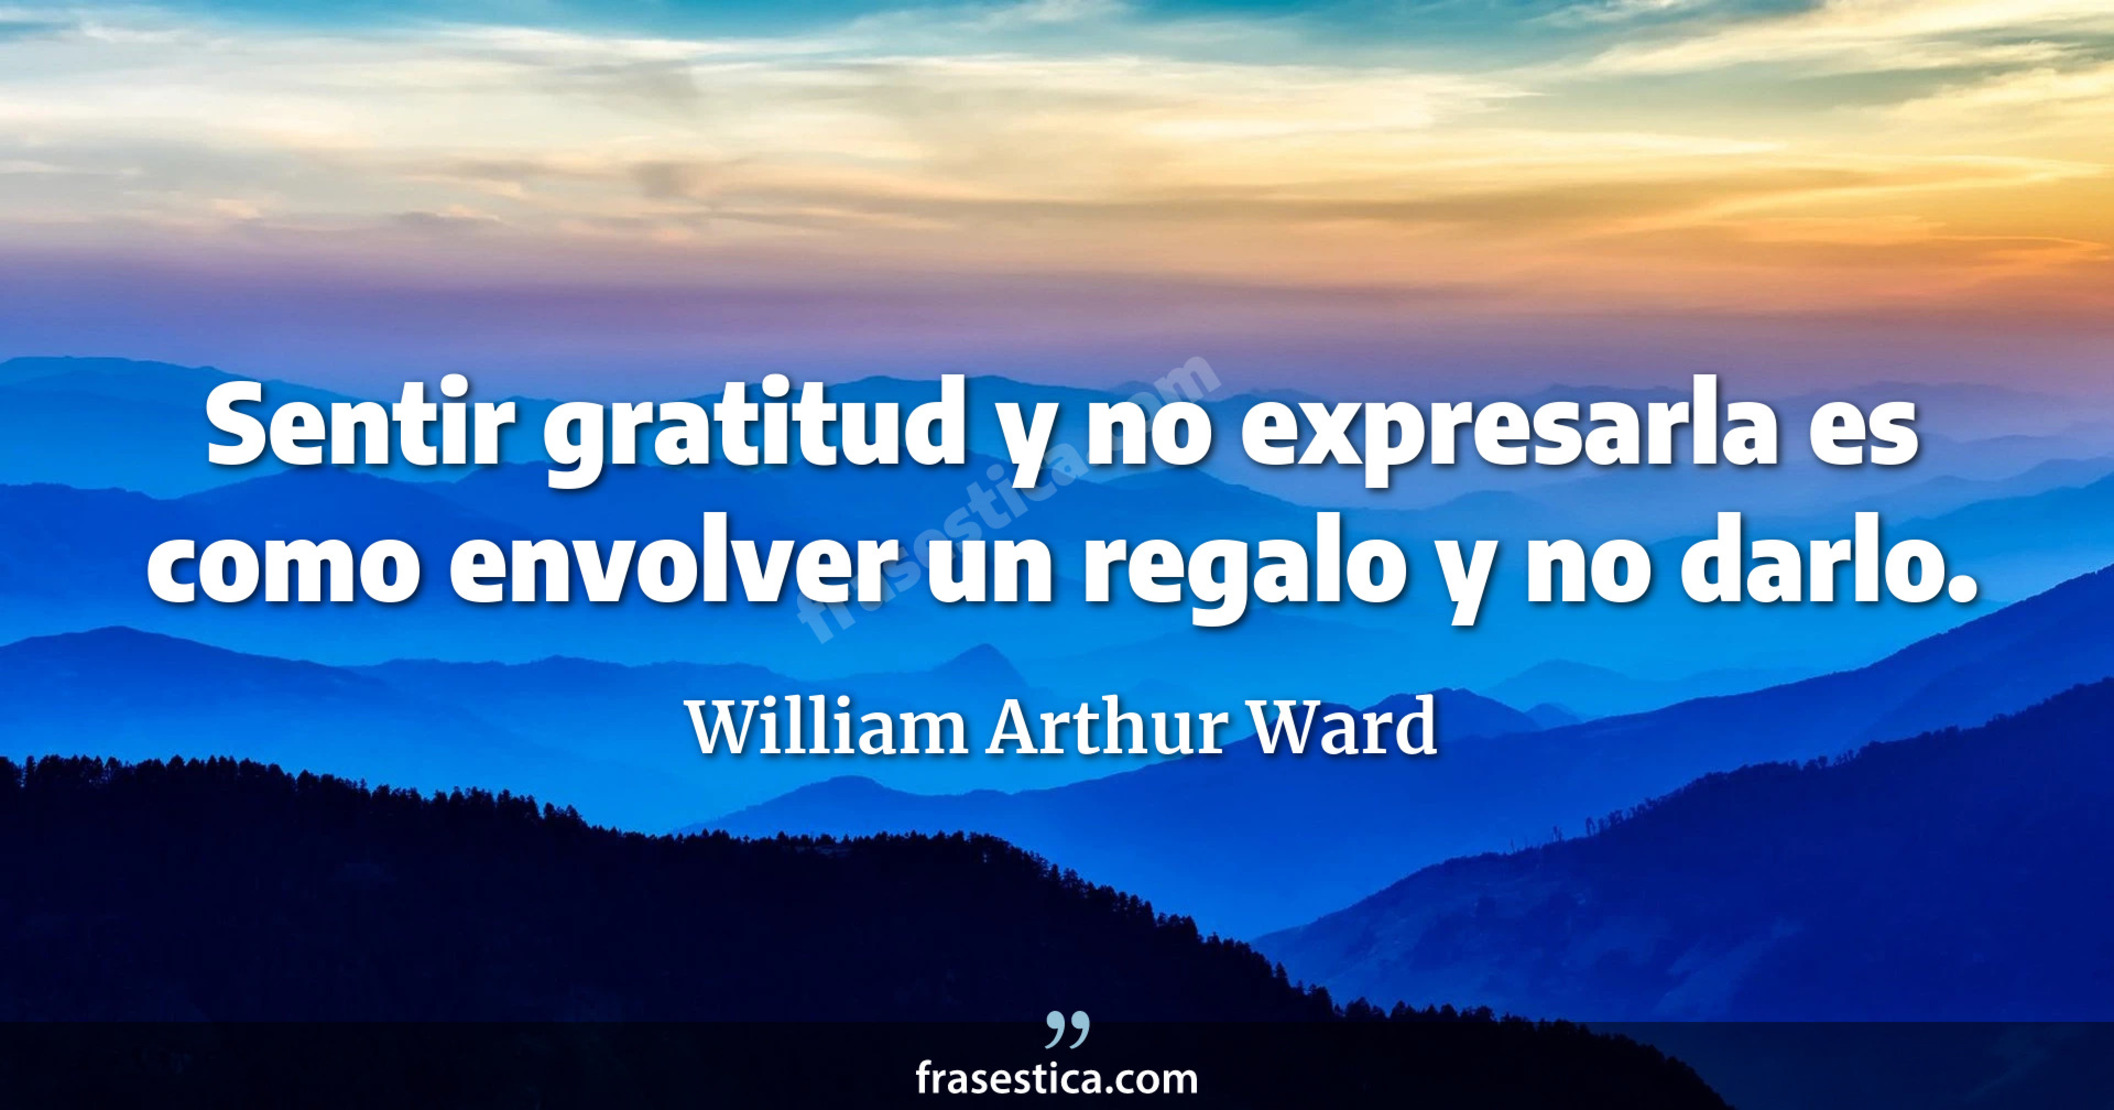 Sentir gratitud y no expresarla es como envolver un regalo y no darlo. - William Arthur Ward